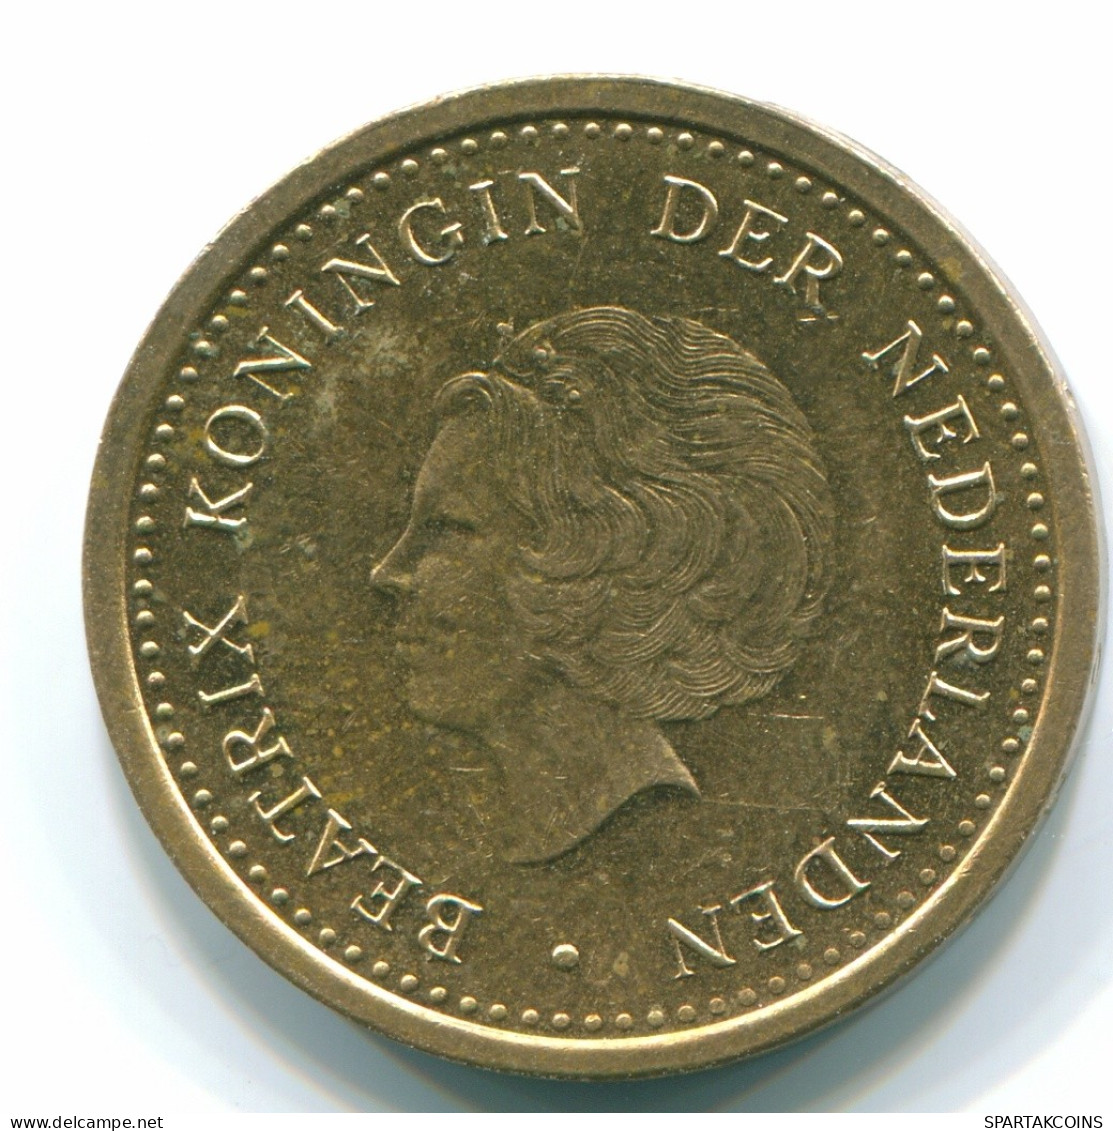 1 GULDEN 1993 NETHERLANDS ANTILLES Aureate Steel Colonial Coin #S12168.U.A - Niederländische Antillen